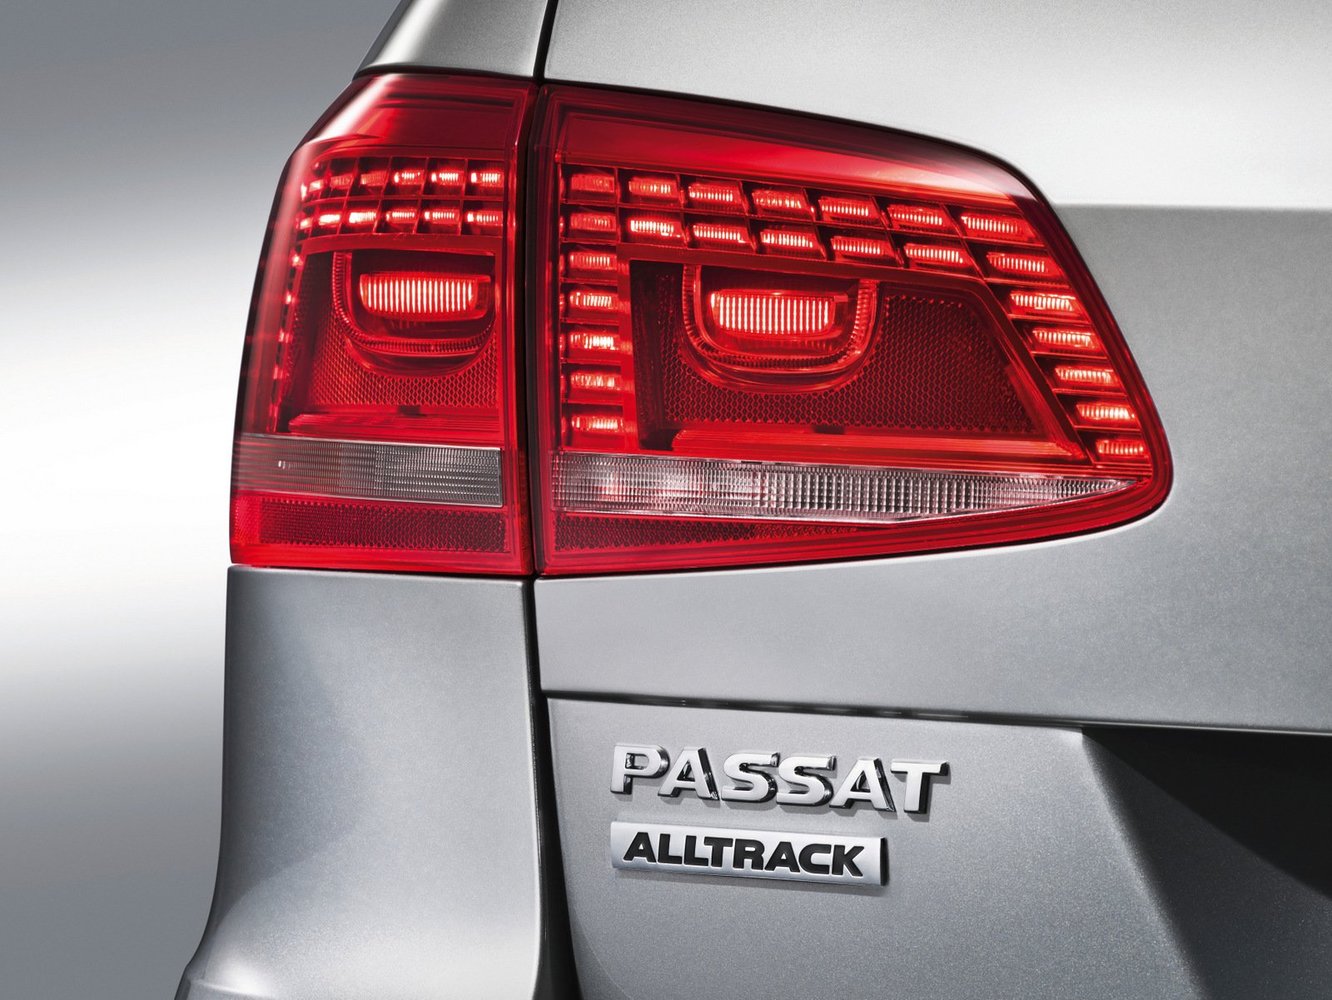 универсал Alltrack Volkswagen Passat 2011 - 2015г выпуска модификация 1.8 MT (160 л.с.) 4×4